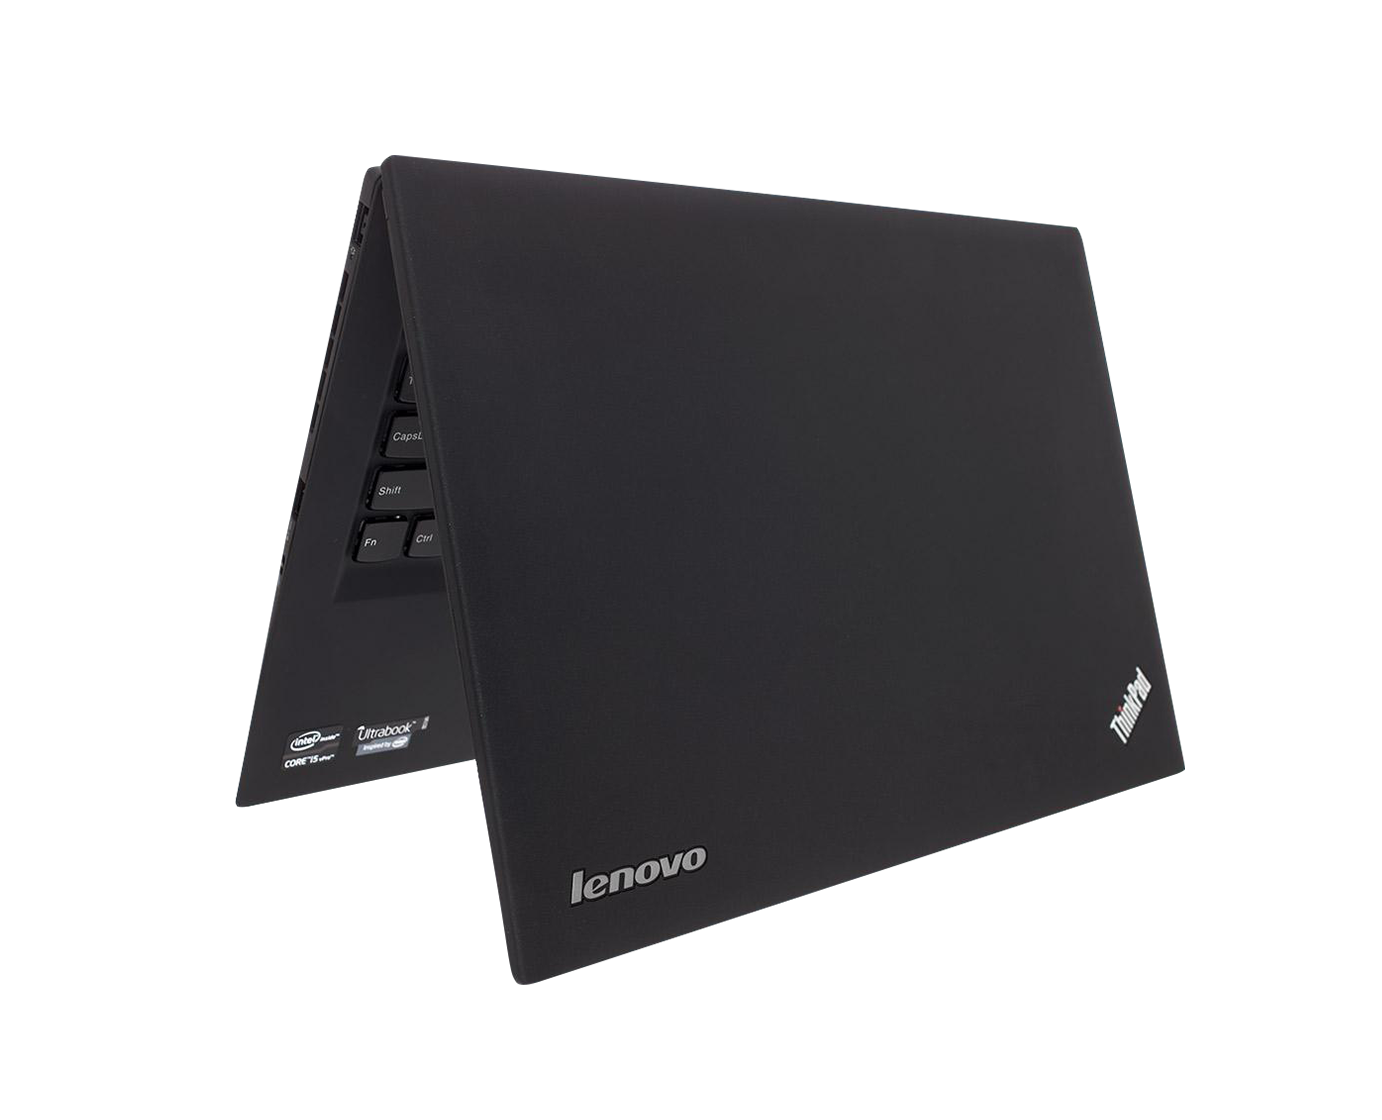 Lenovo Thinkpad X1 Carbon 6th / Core I7 8550u 1,8ghz / 14" FullHD / Win 10 Pro / ¡INCLUYE Regalo ampliación a 16GB RAM y 256GB SSD!  ¡Liquidación!